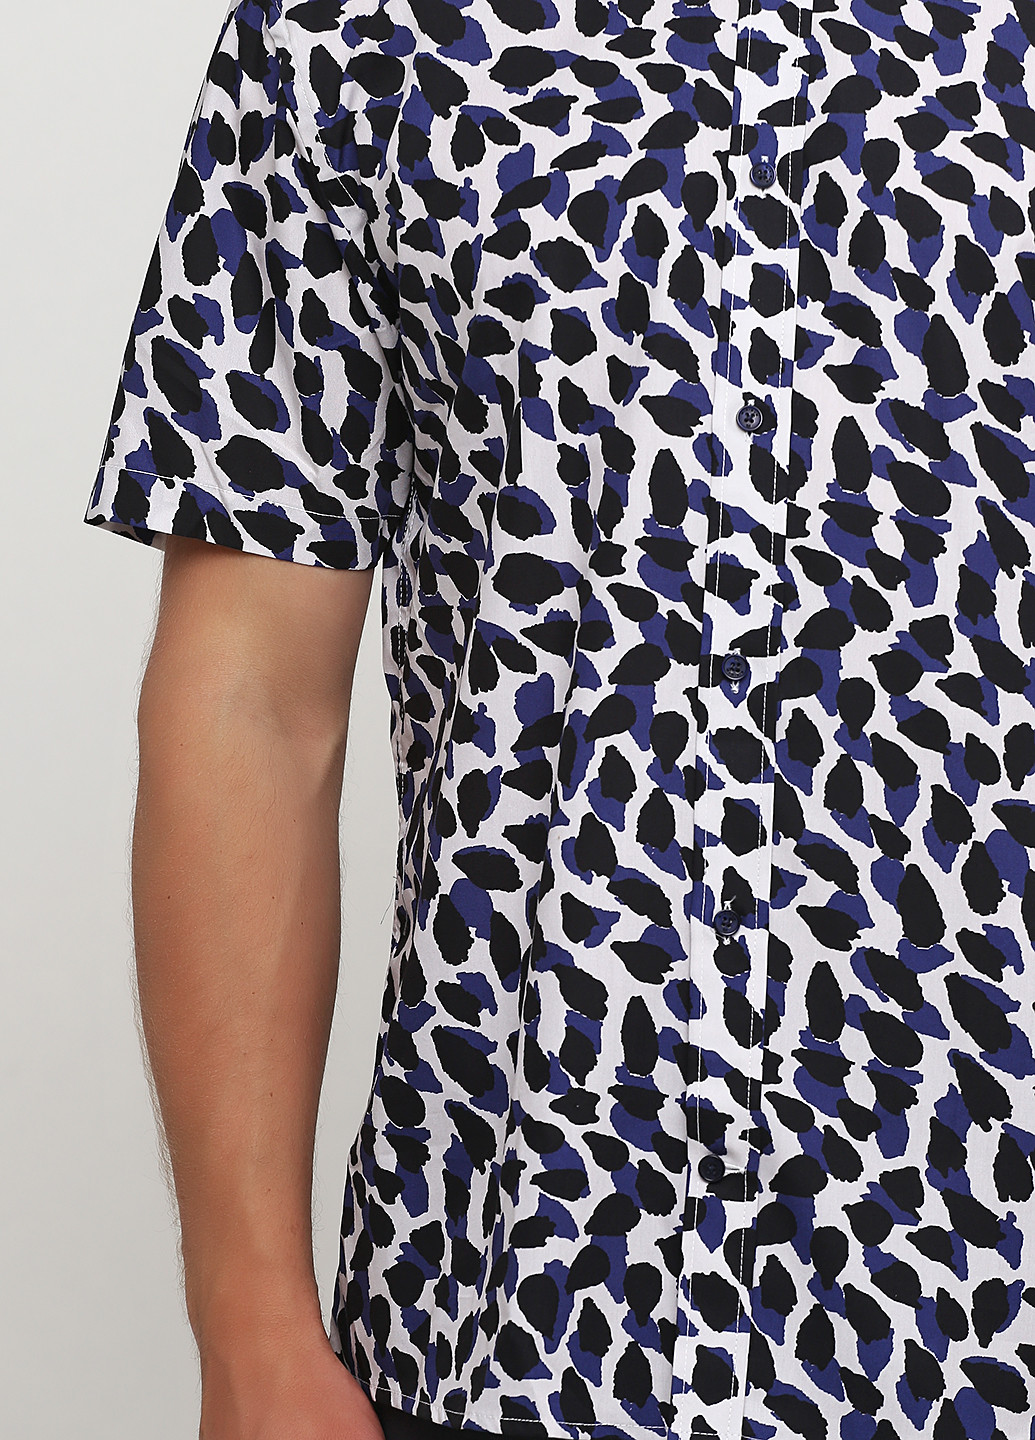 Цветная кэжуал рубашка с абстрактным узором Minimum